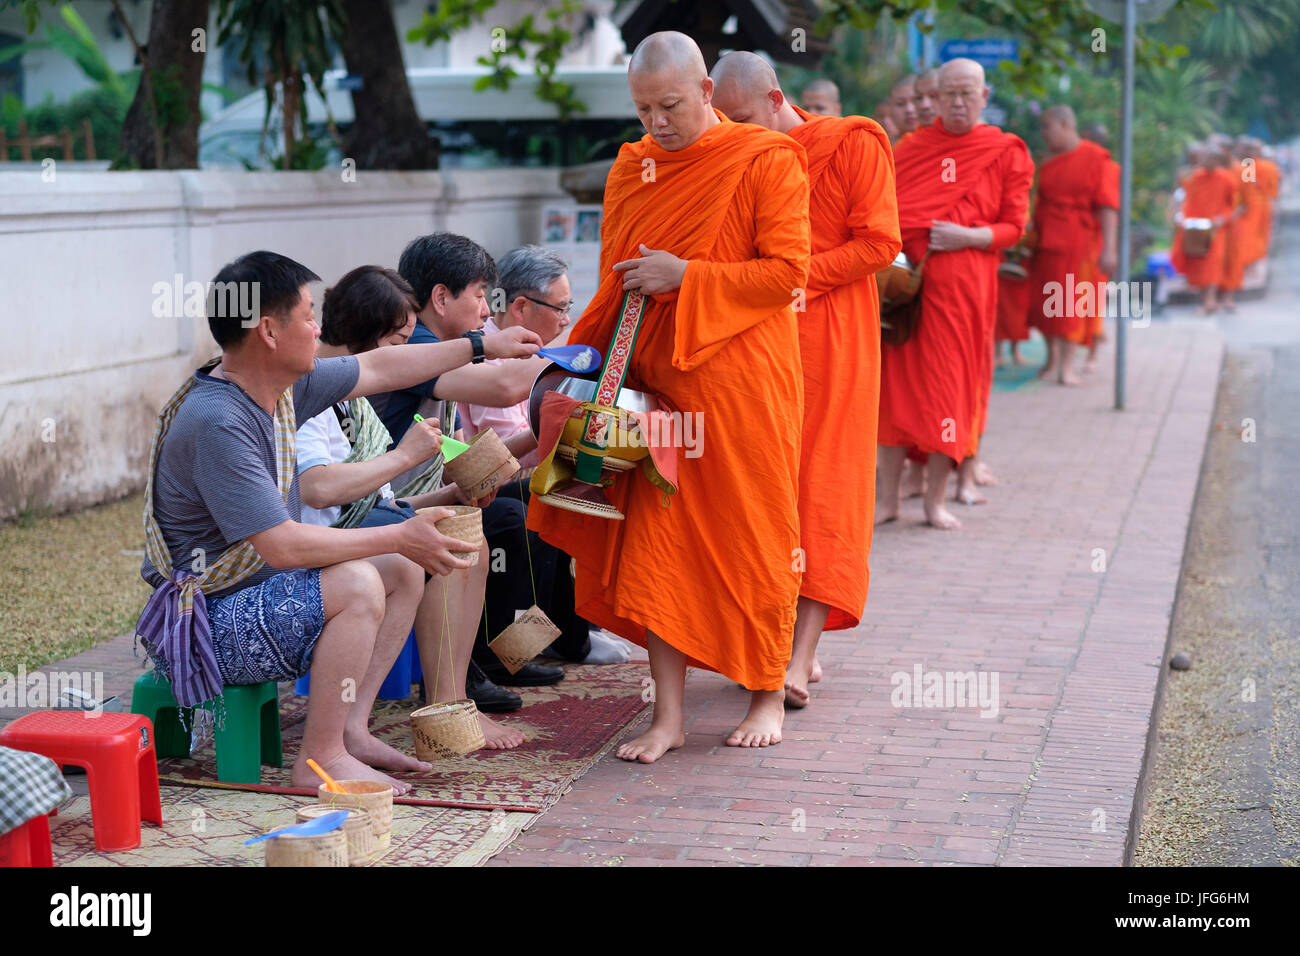 Procession de moines bouddhistes en robe orange à l'aube pour recueillir des dons dans les rues de Luang Prabang, Laos, Asie Banque D'Images